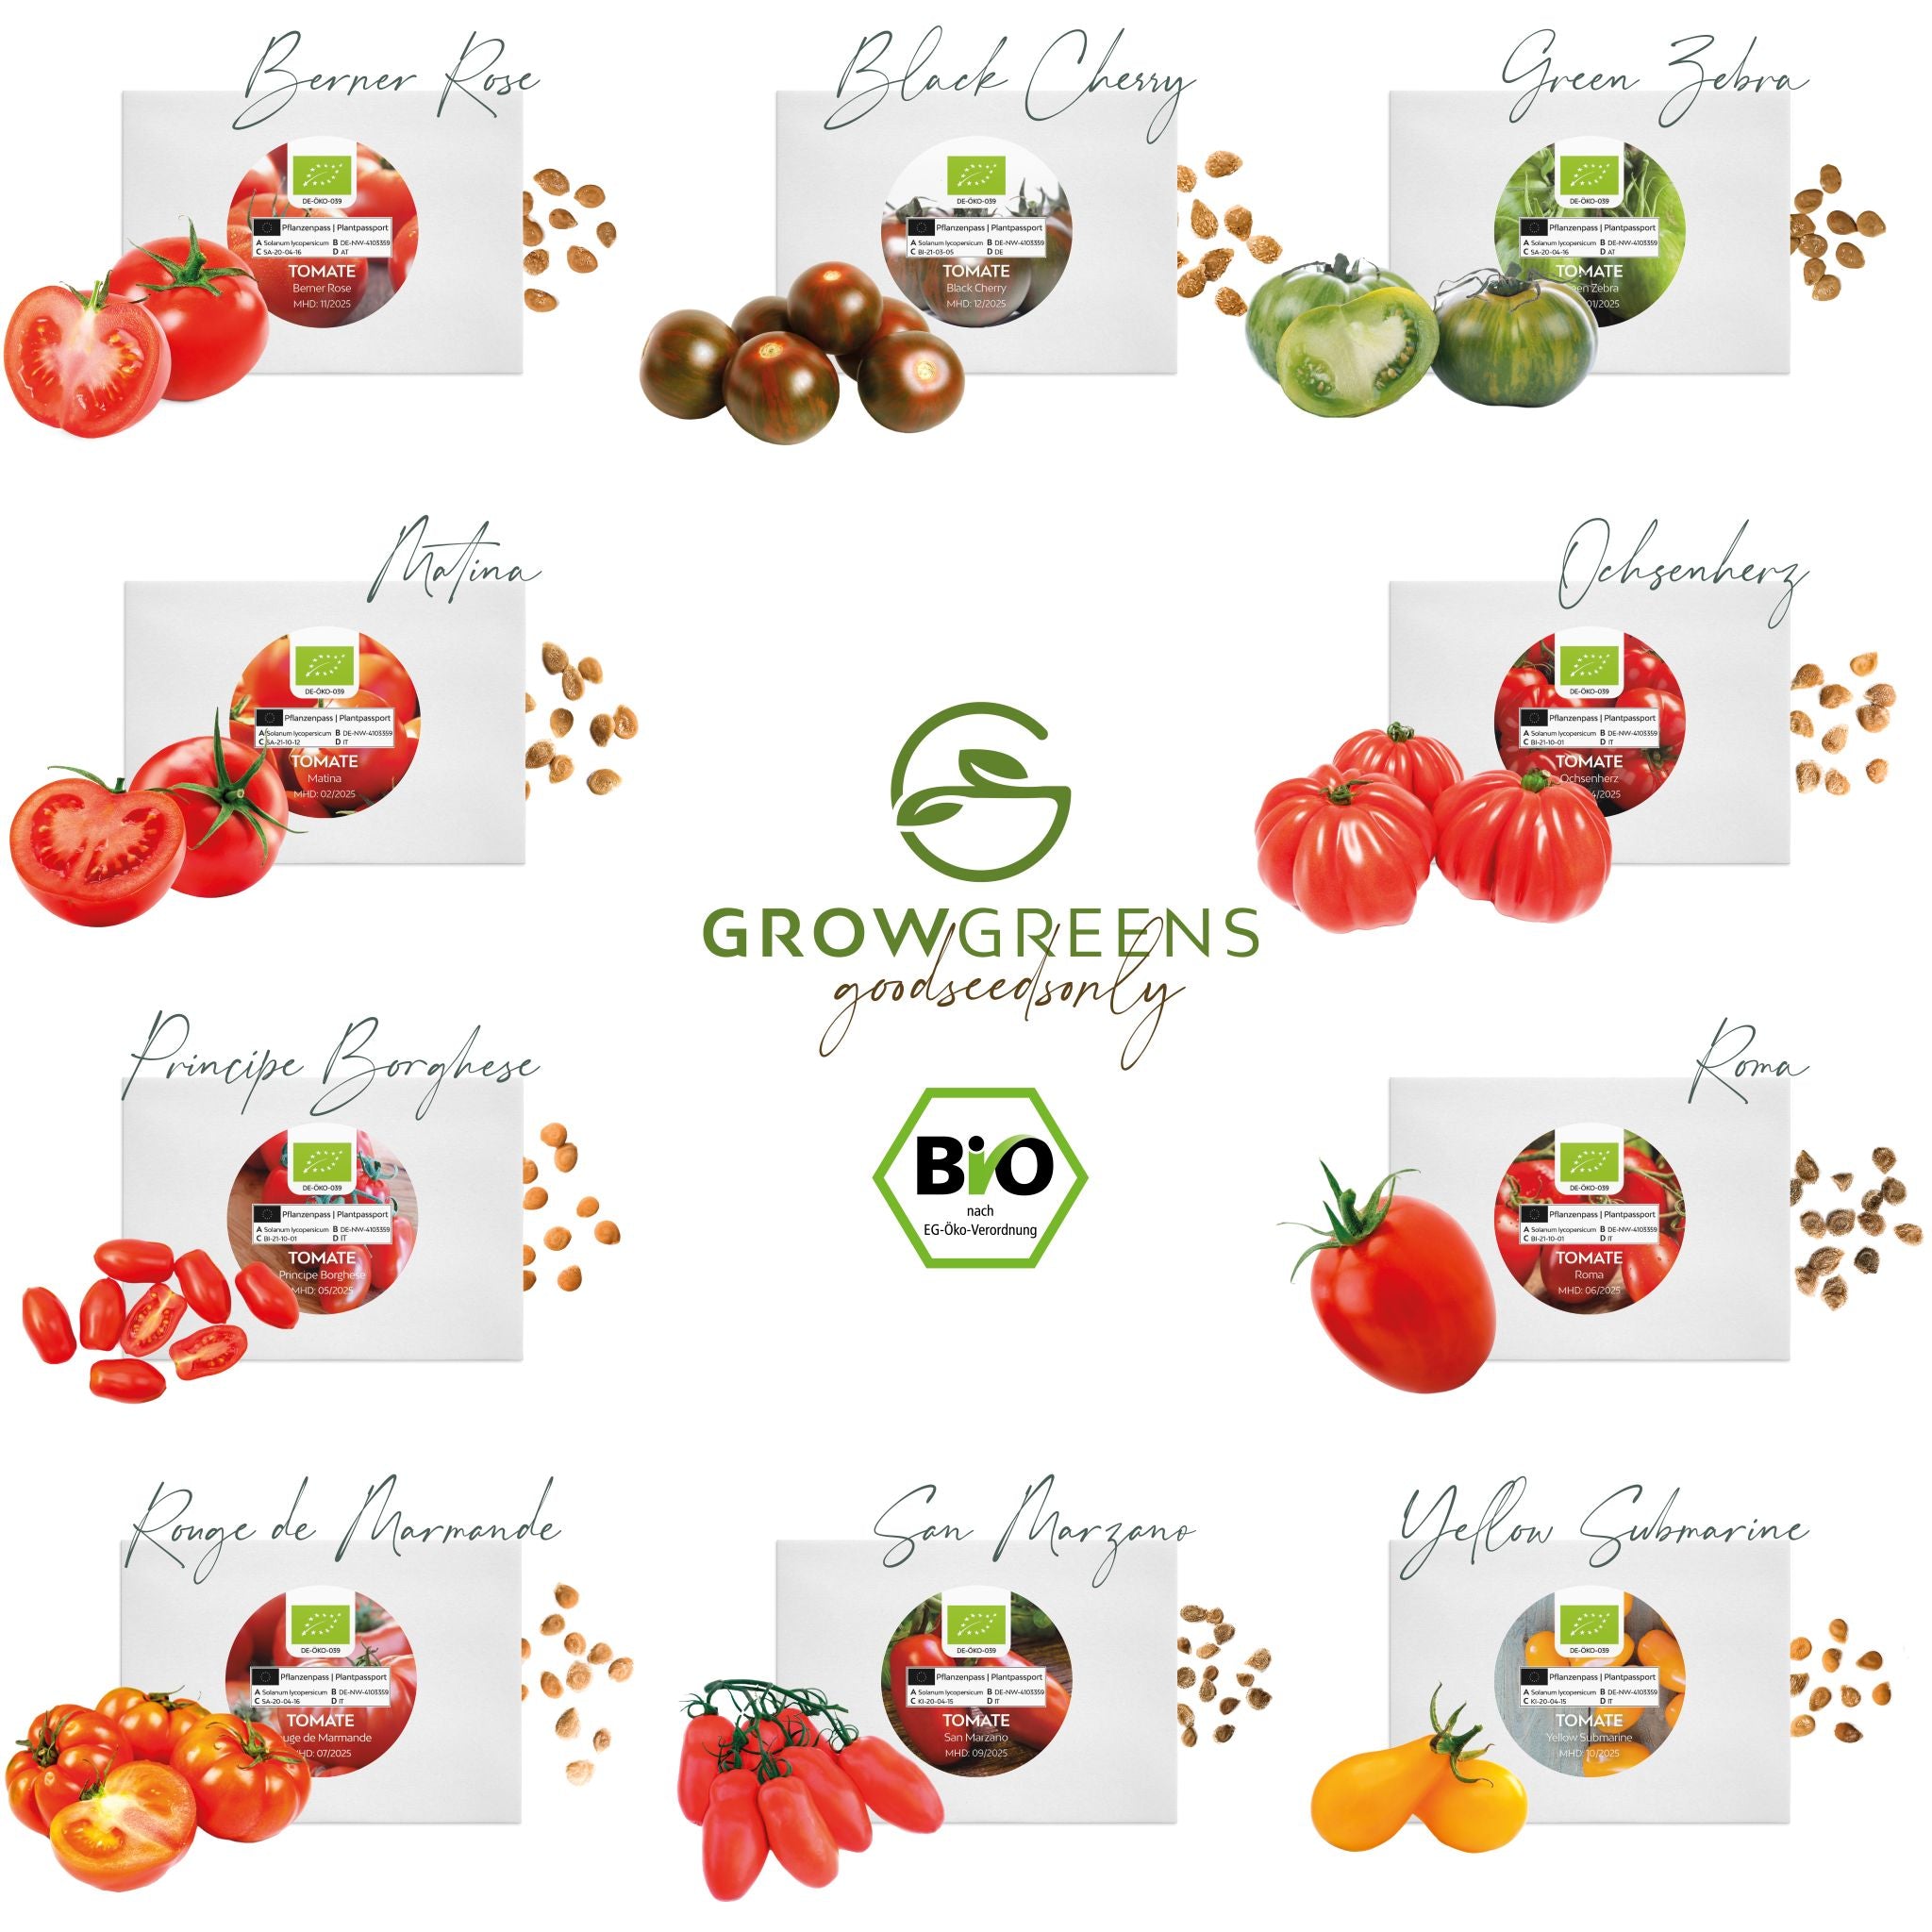 BIO Tomatensamen Set (10 Sorten) - Tomaten Samen Anzuchtset aus biologischem Anbau